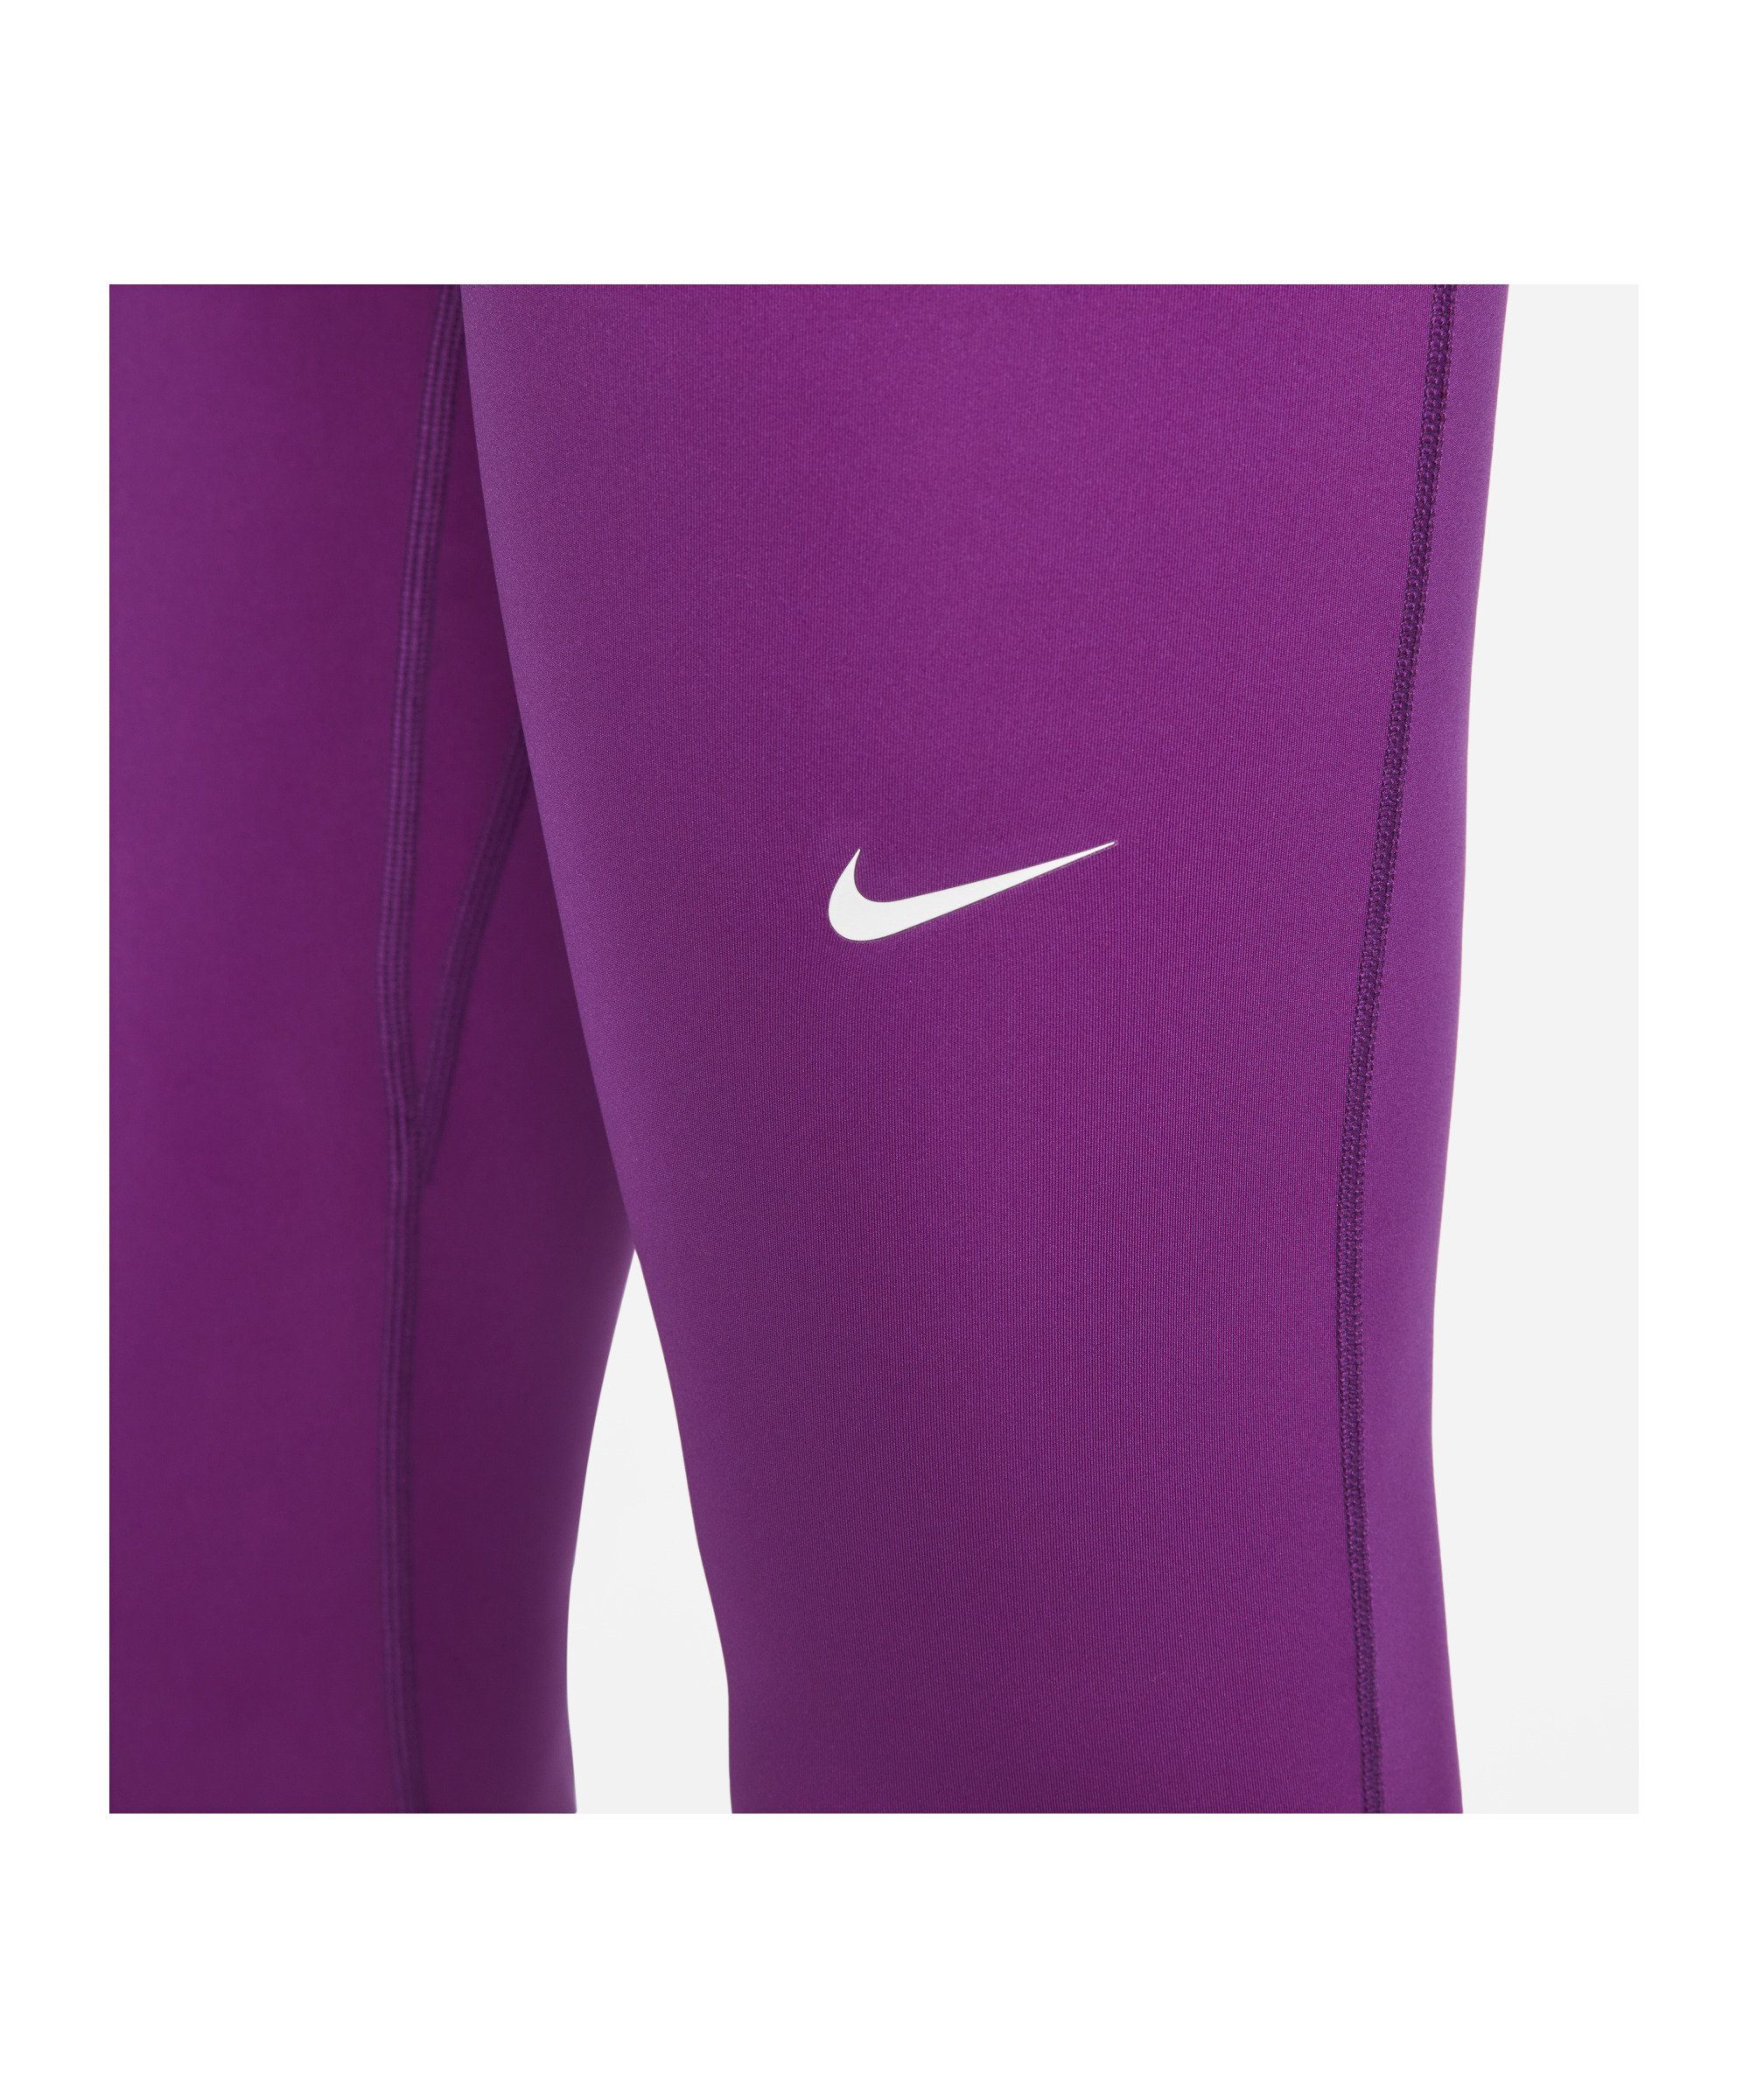 Damen 365 Leggings Laufhose mehrfarbig Nike